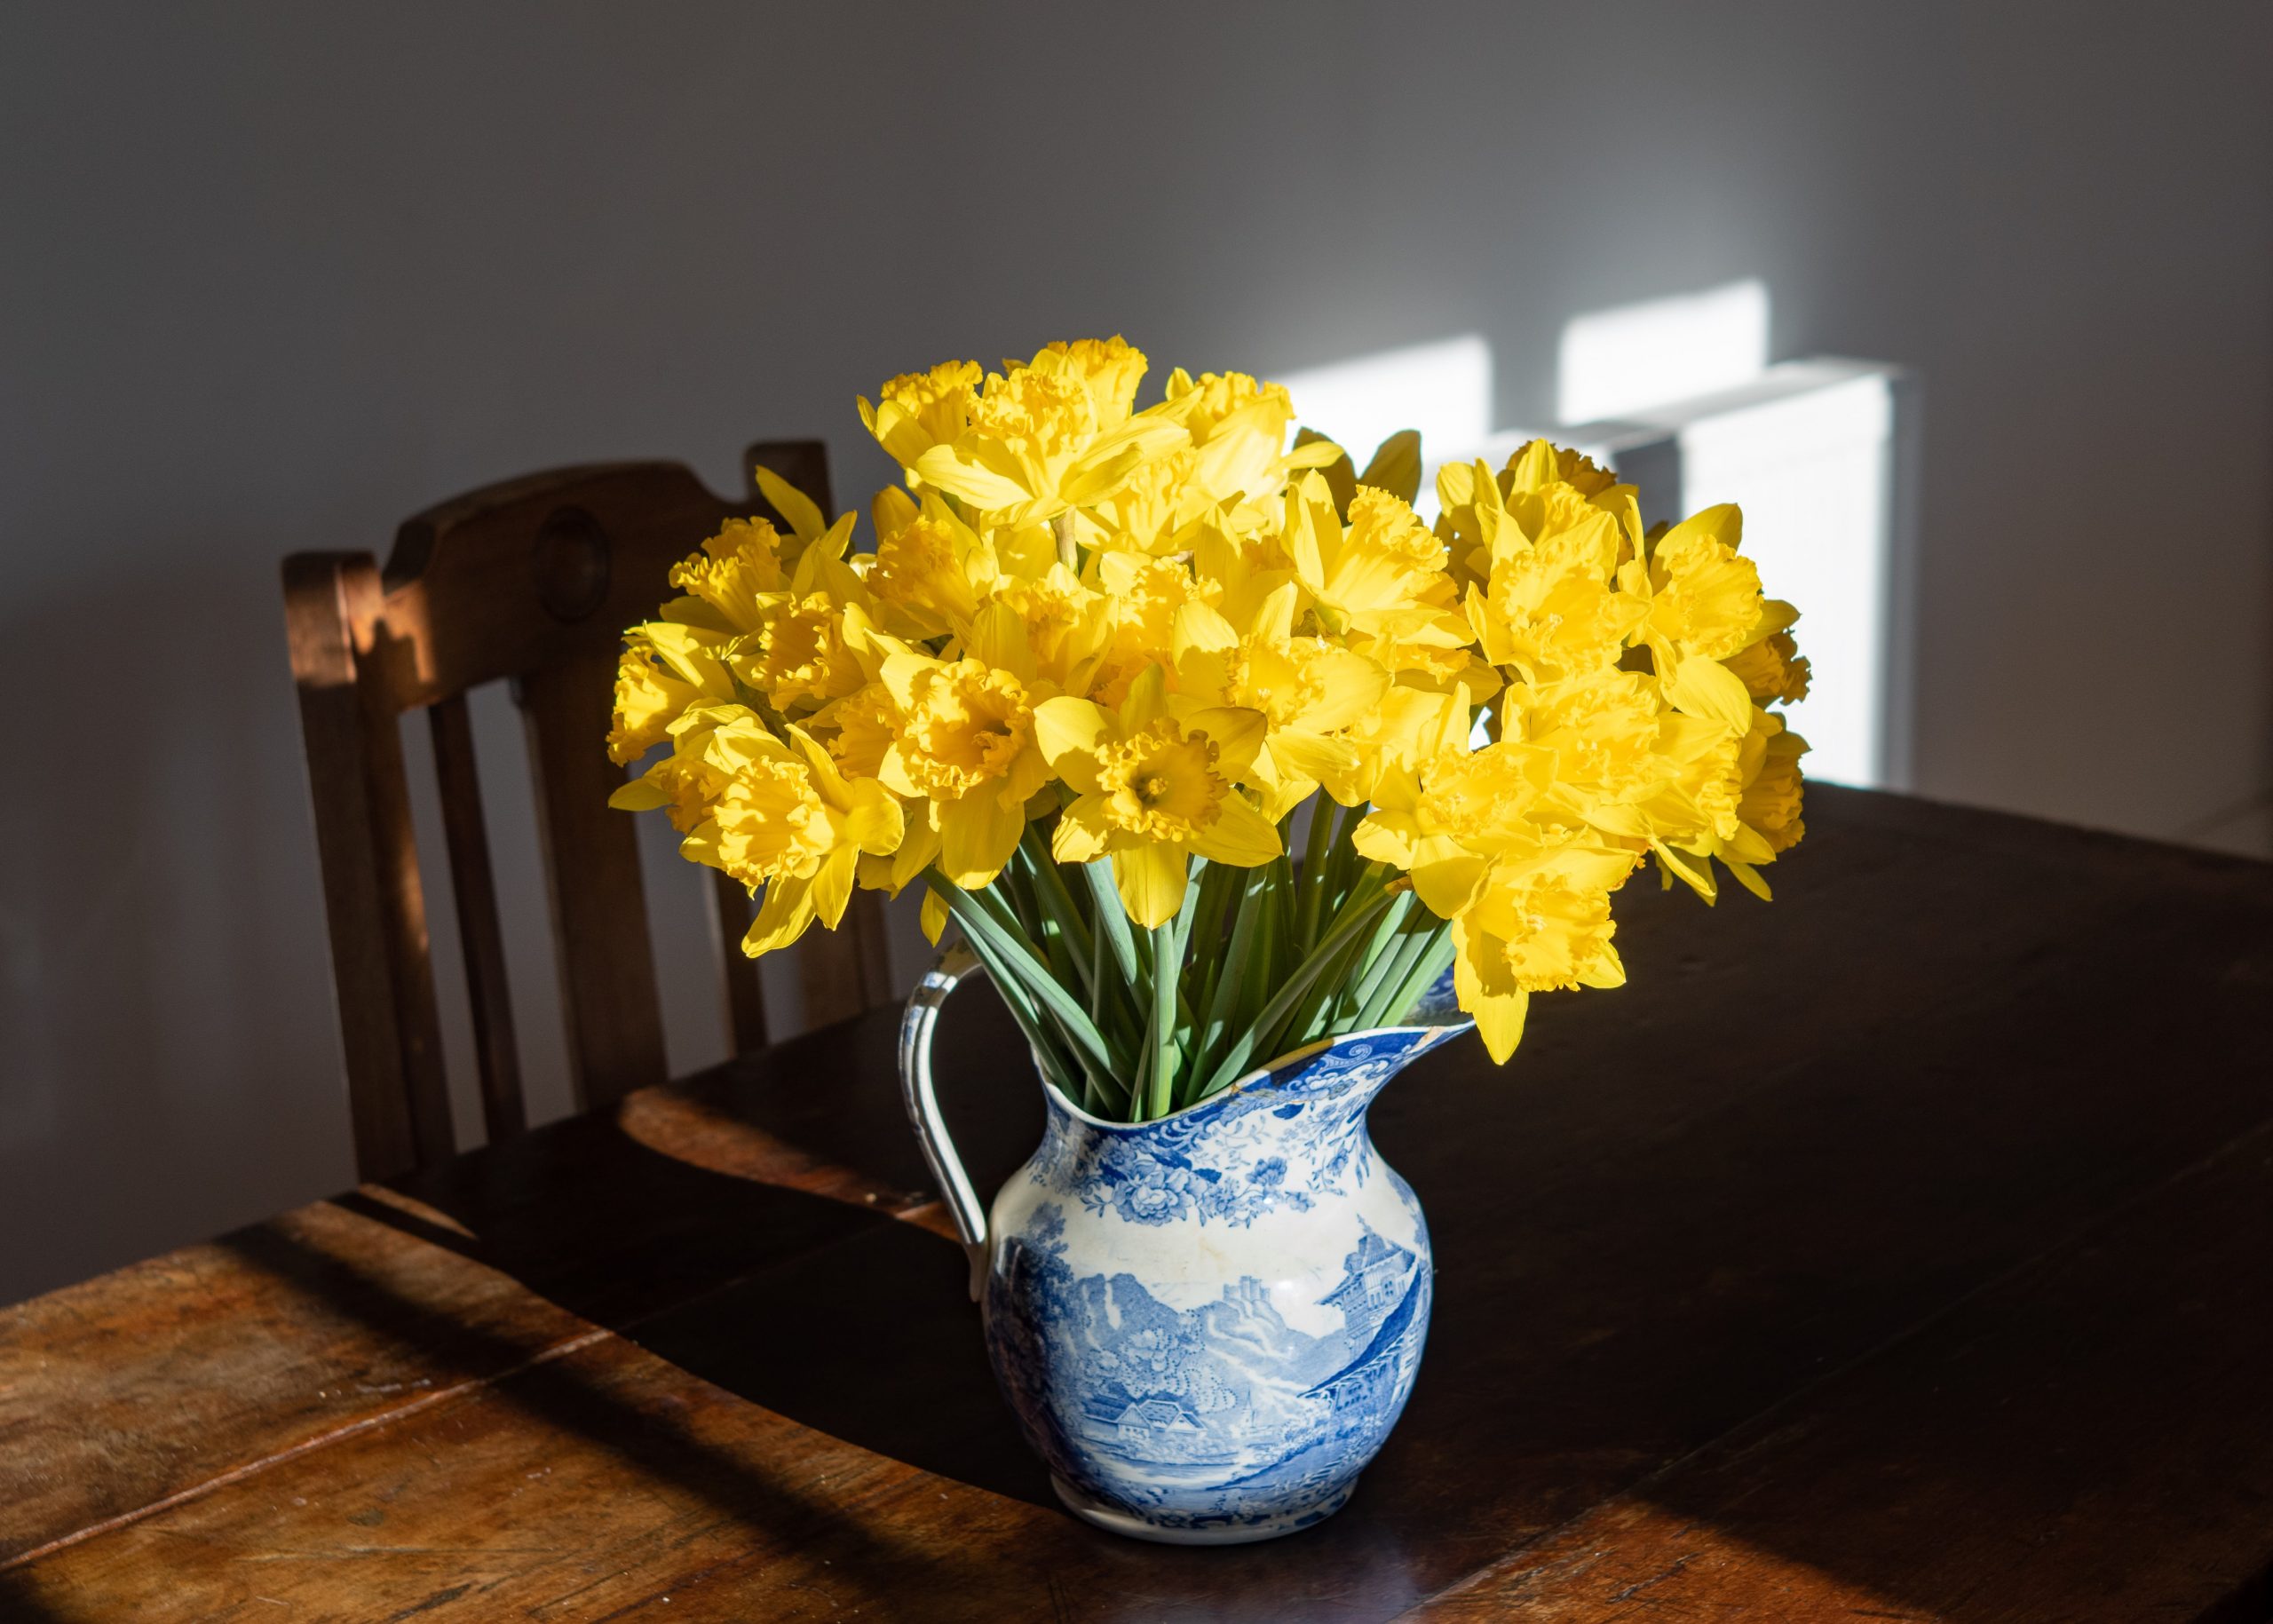 Daffodils in vase